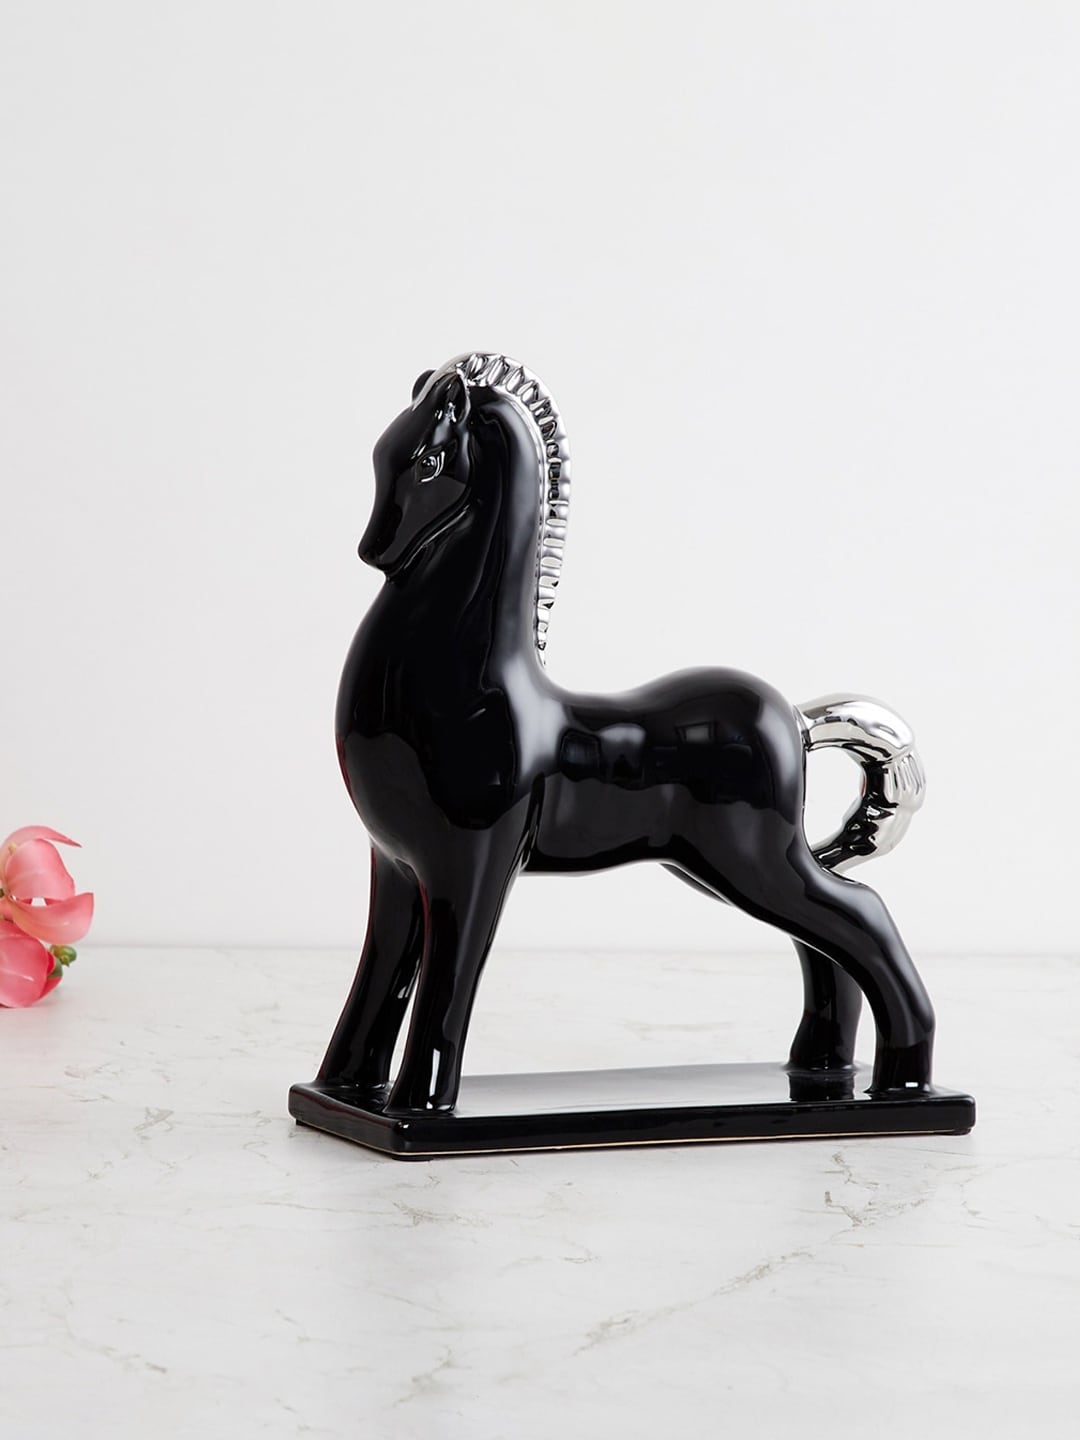 Home Centre Black & White Splendid Solid Horse Figurine Showpiece Price in India